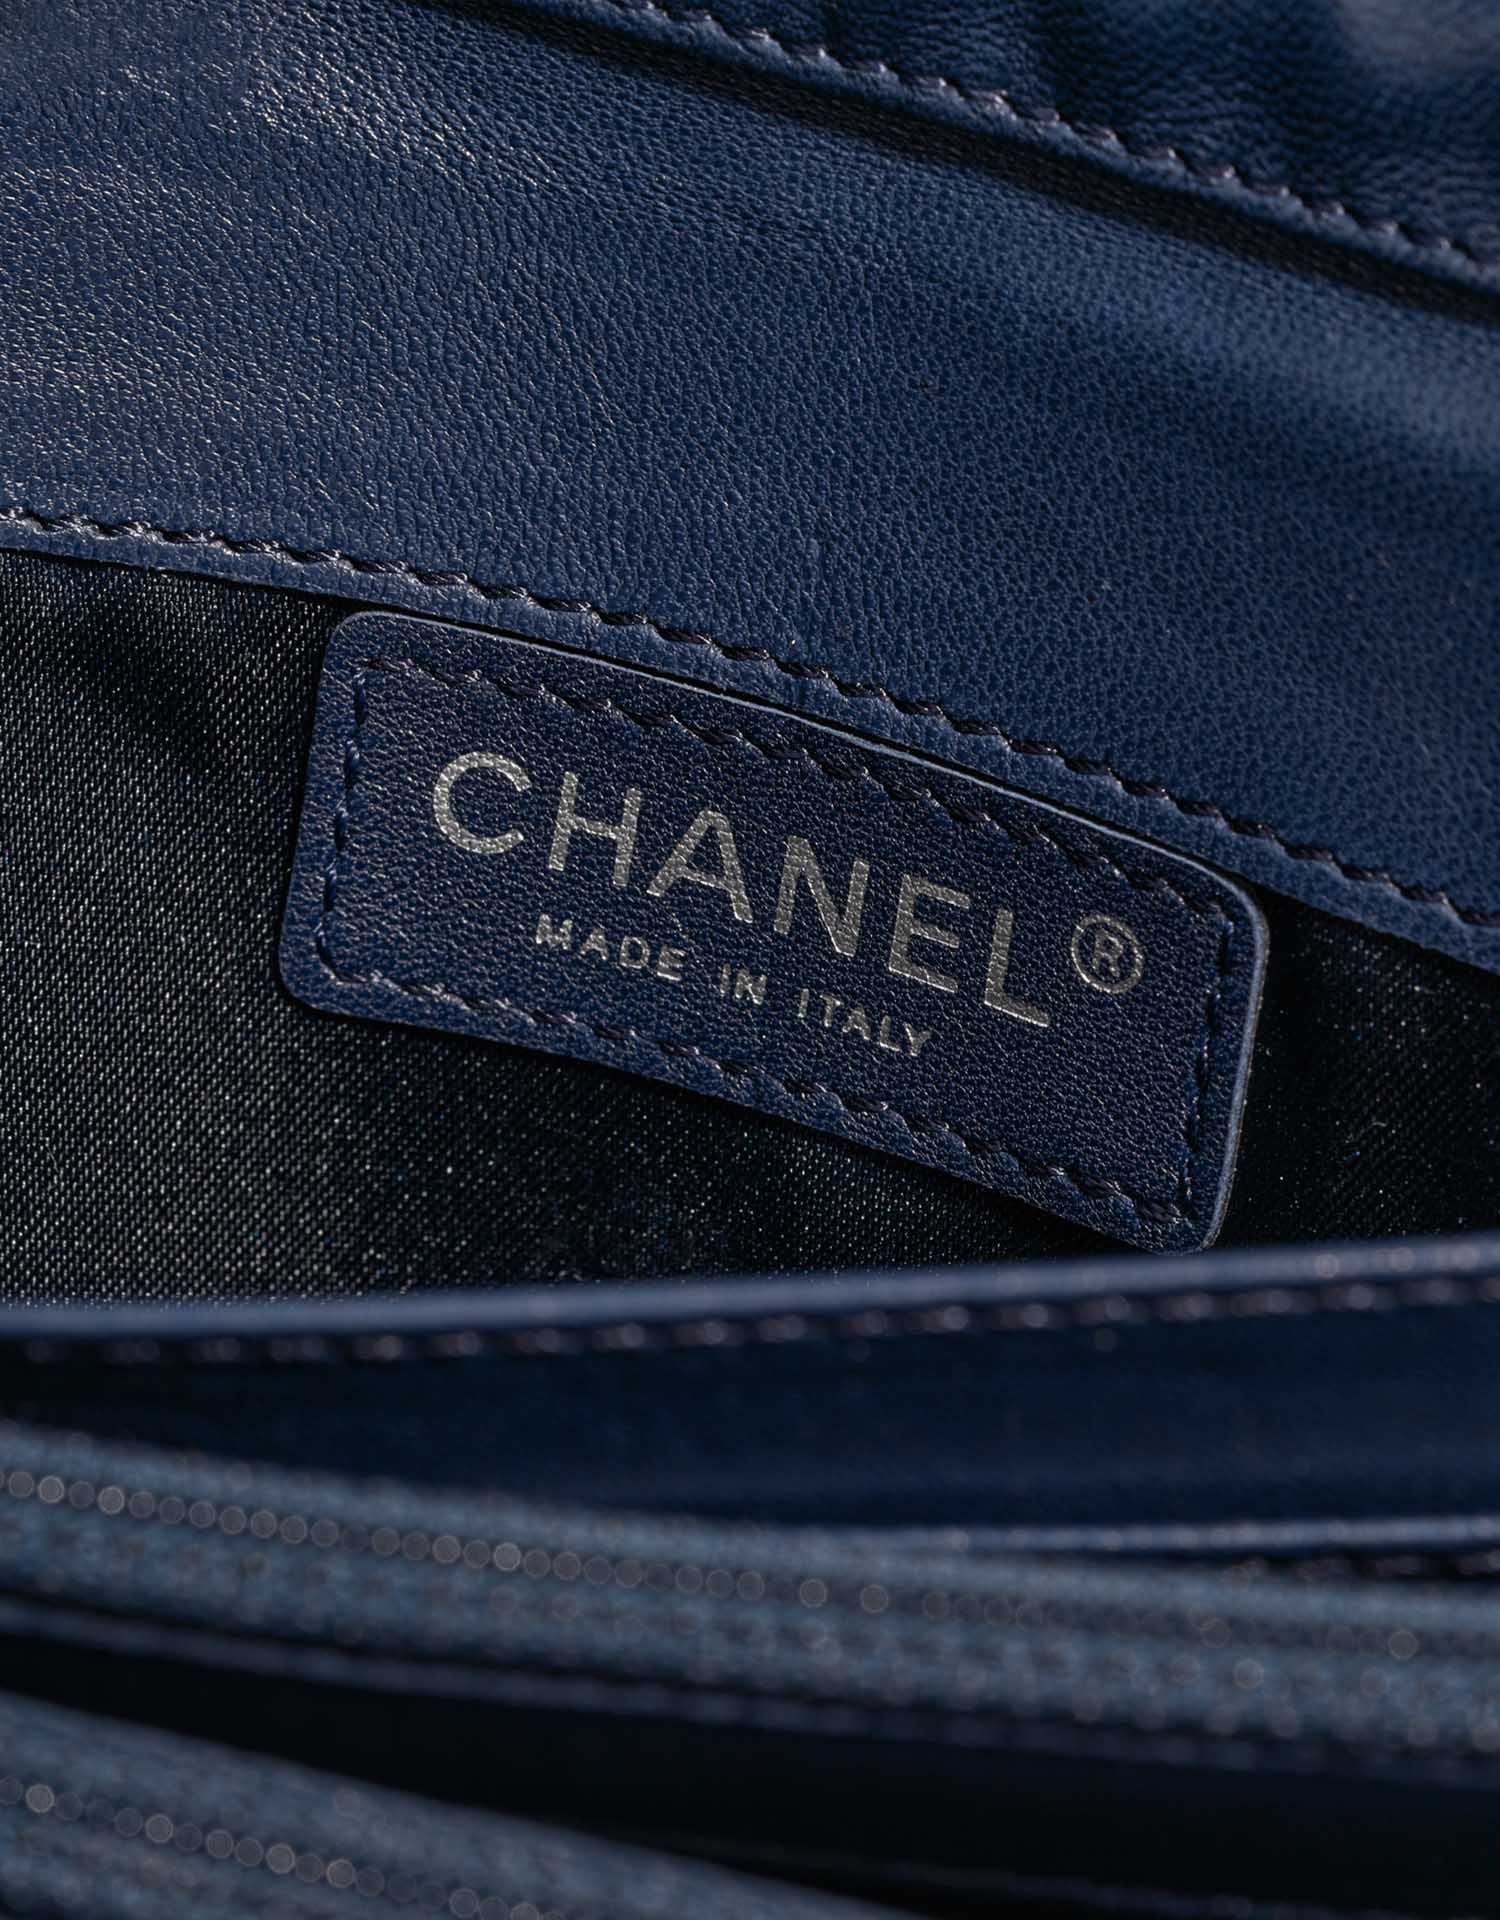 Chanel Timeless Medium DarkBlue Logo | Verkaufen Sie Ihre Designer-Tasche auf Saclab.com